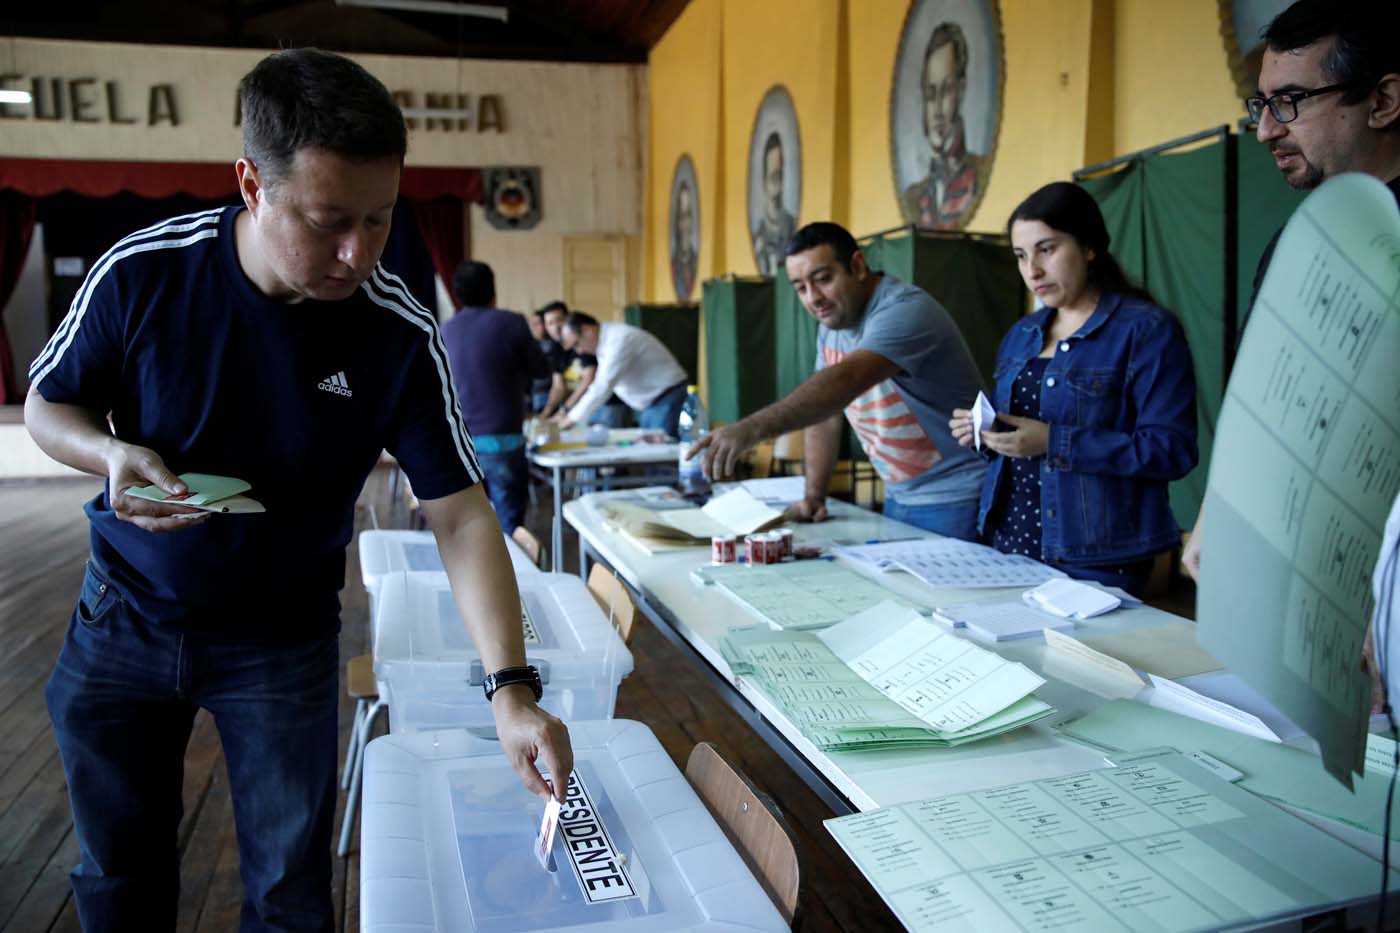 La Bolsa de Santiago cae 3,88% tras resultado electoral